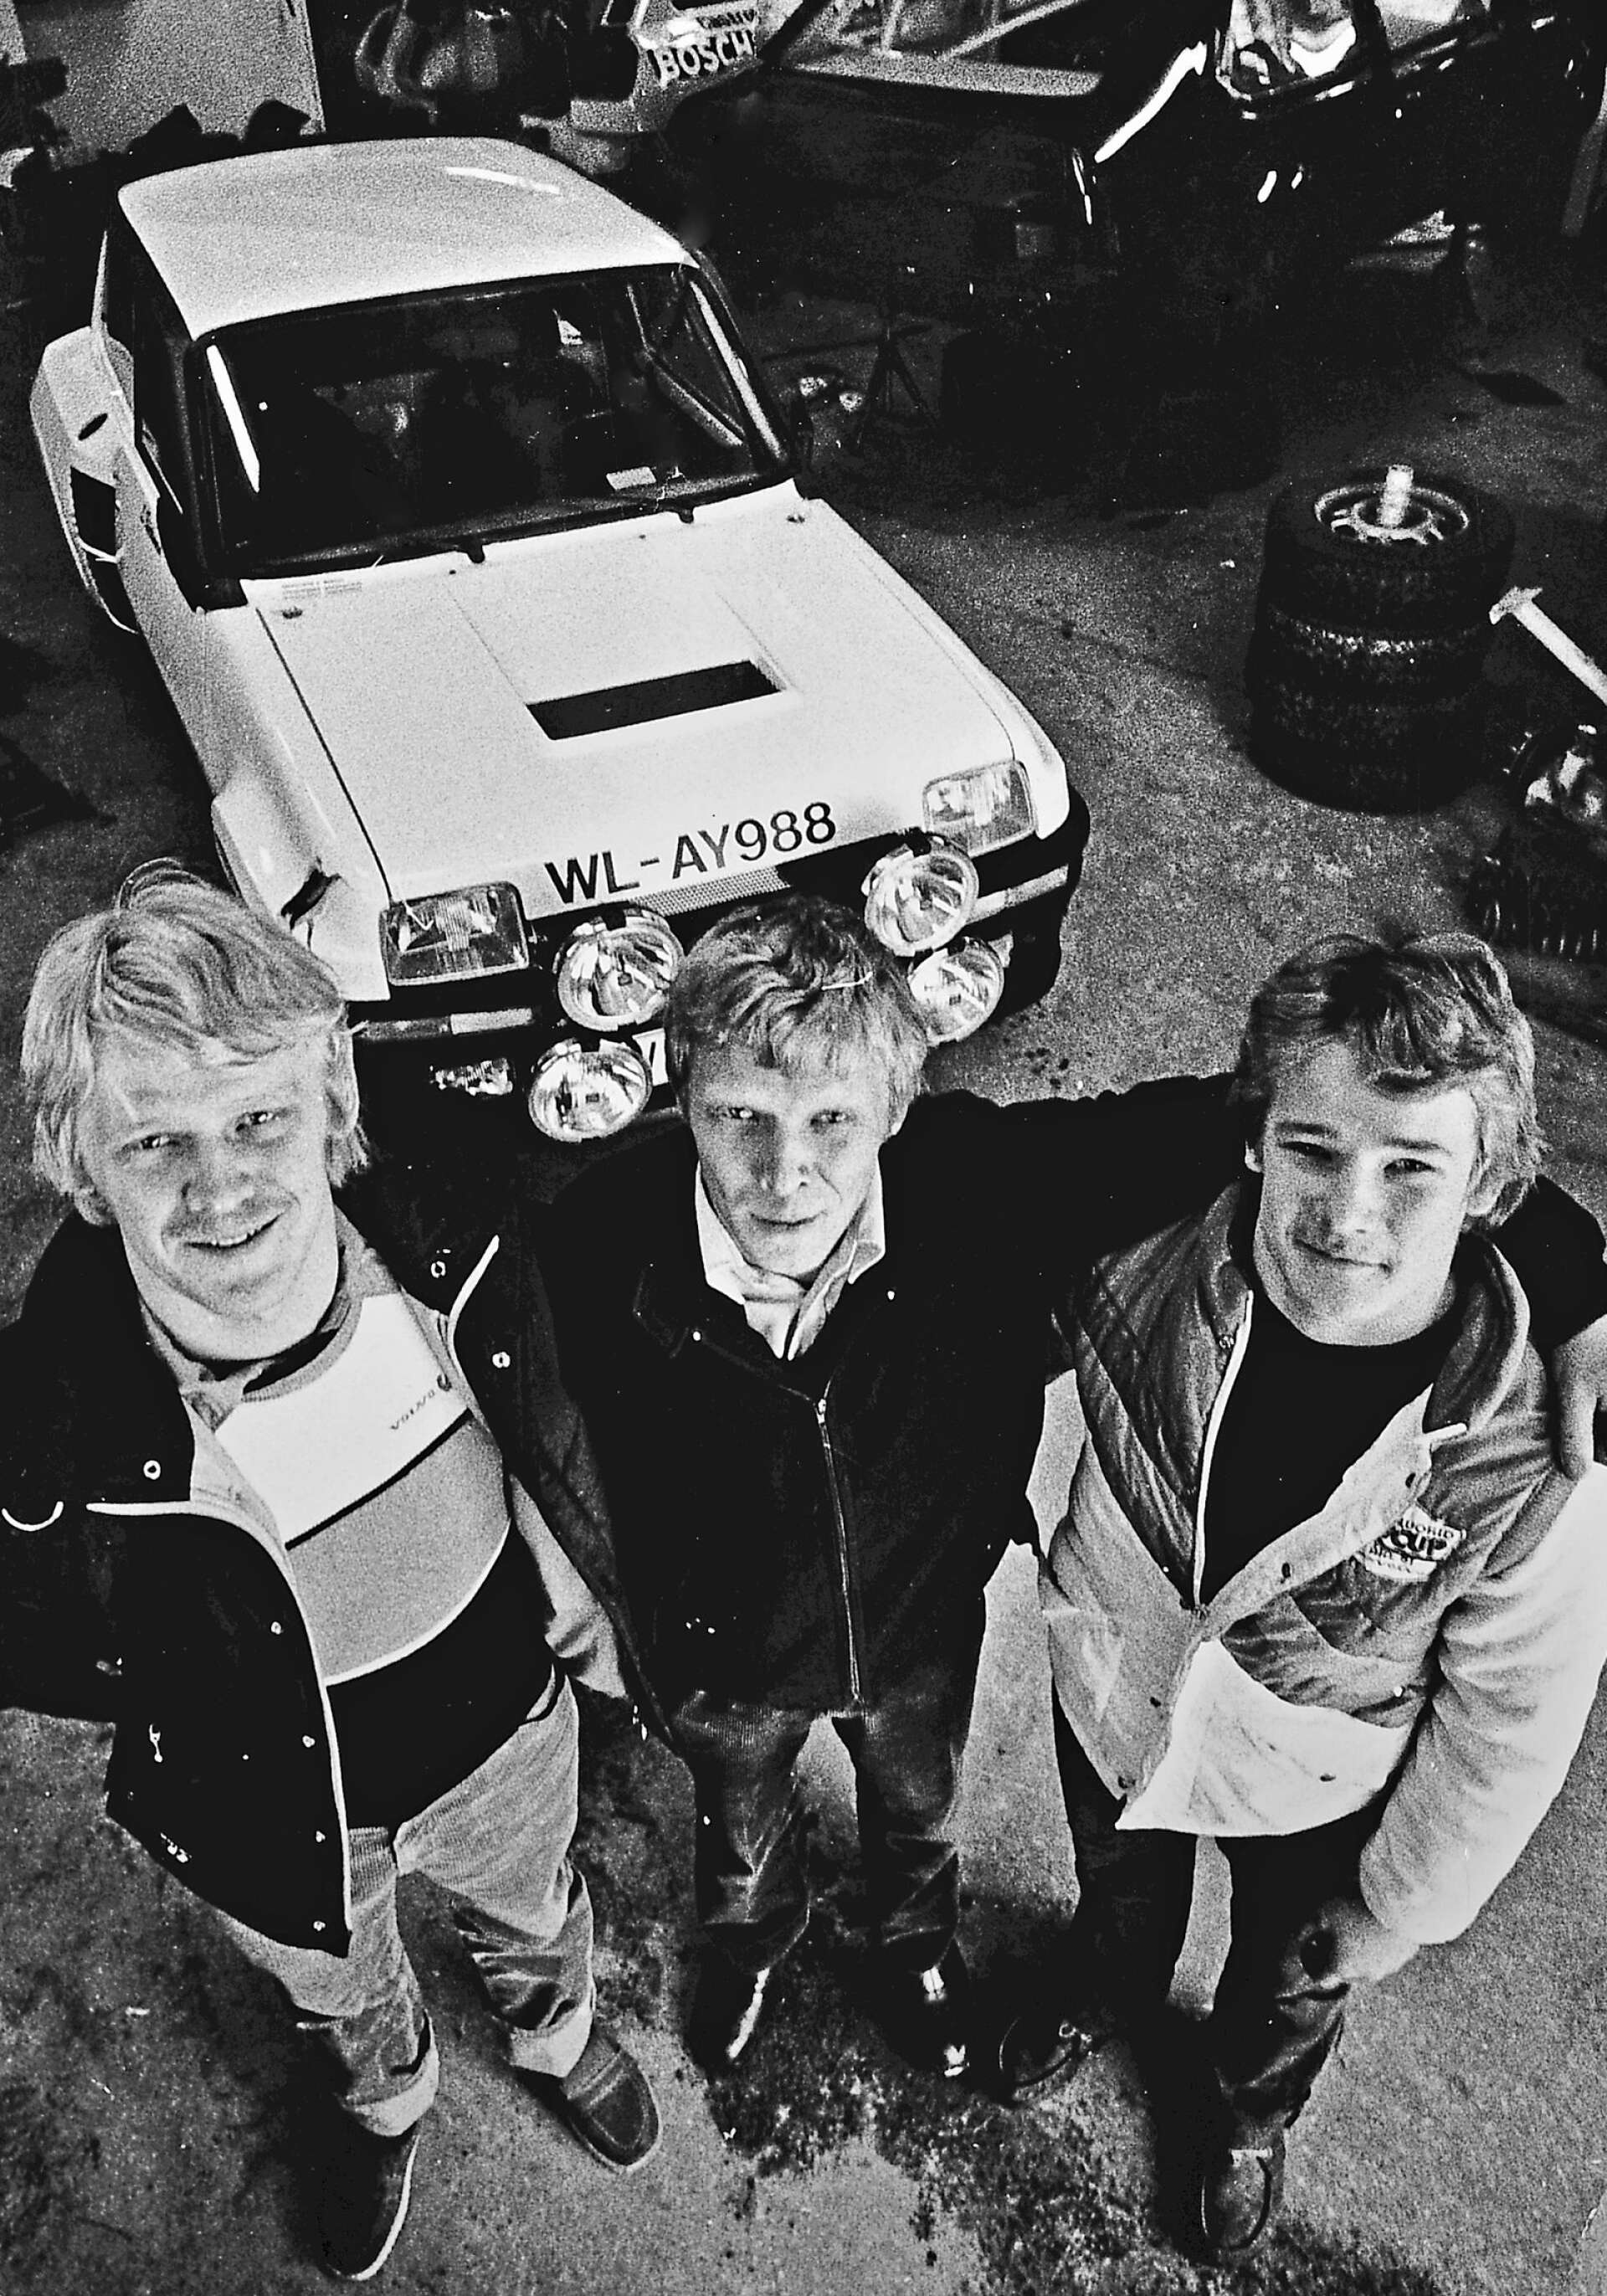 Bröderna Lars-Erik, Per-Inge och Stig-Olov Walfridsson har alla nått stora framgångar inom bilsporten. Här fångade på en bild när alla tre hade kommit i gång med sina karriärer.